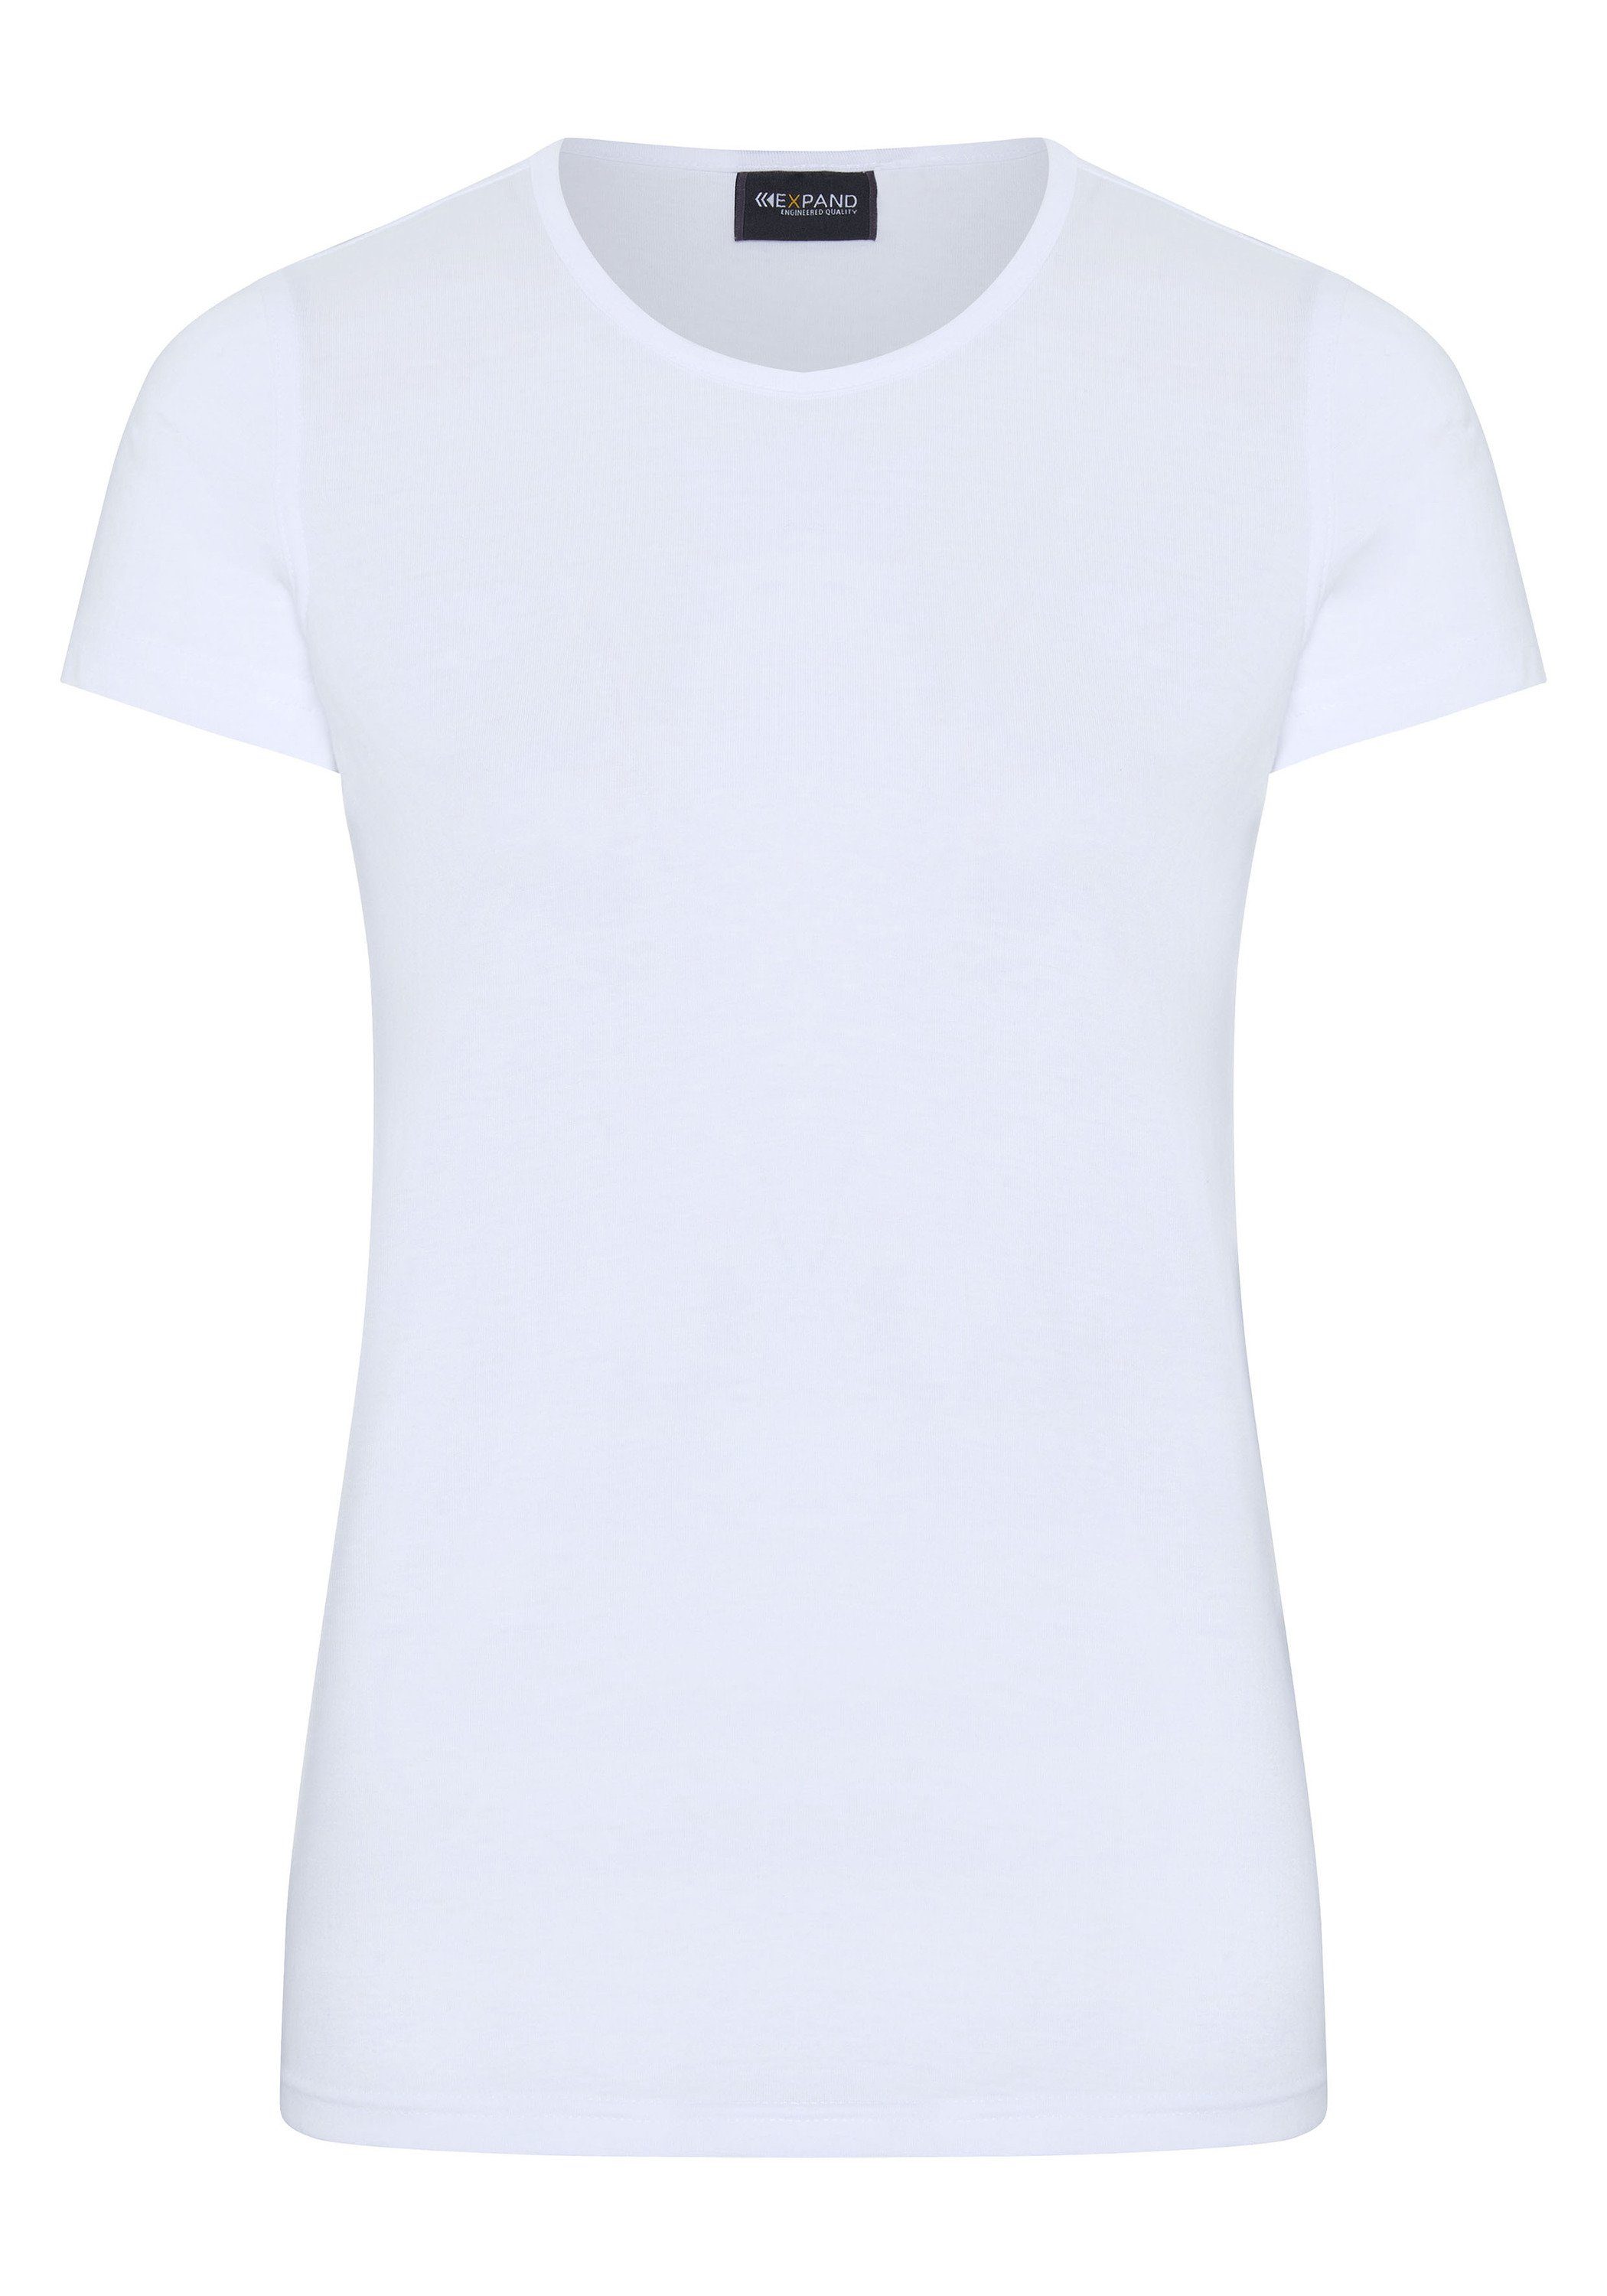 Expand T-Shirt in vielen Farben weiß